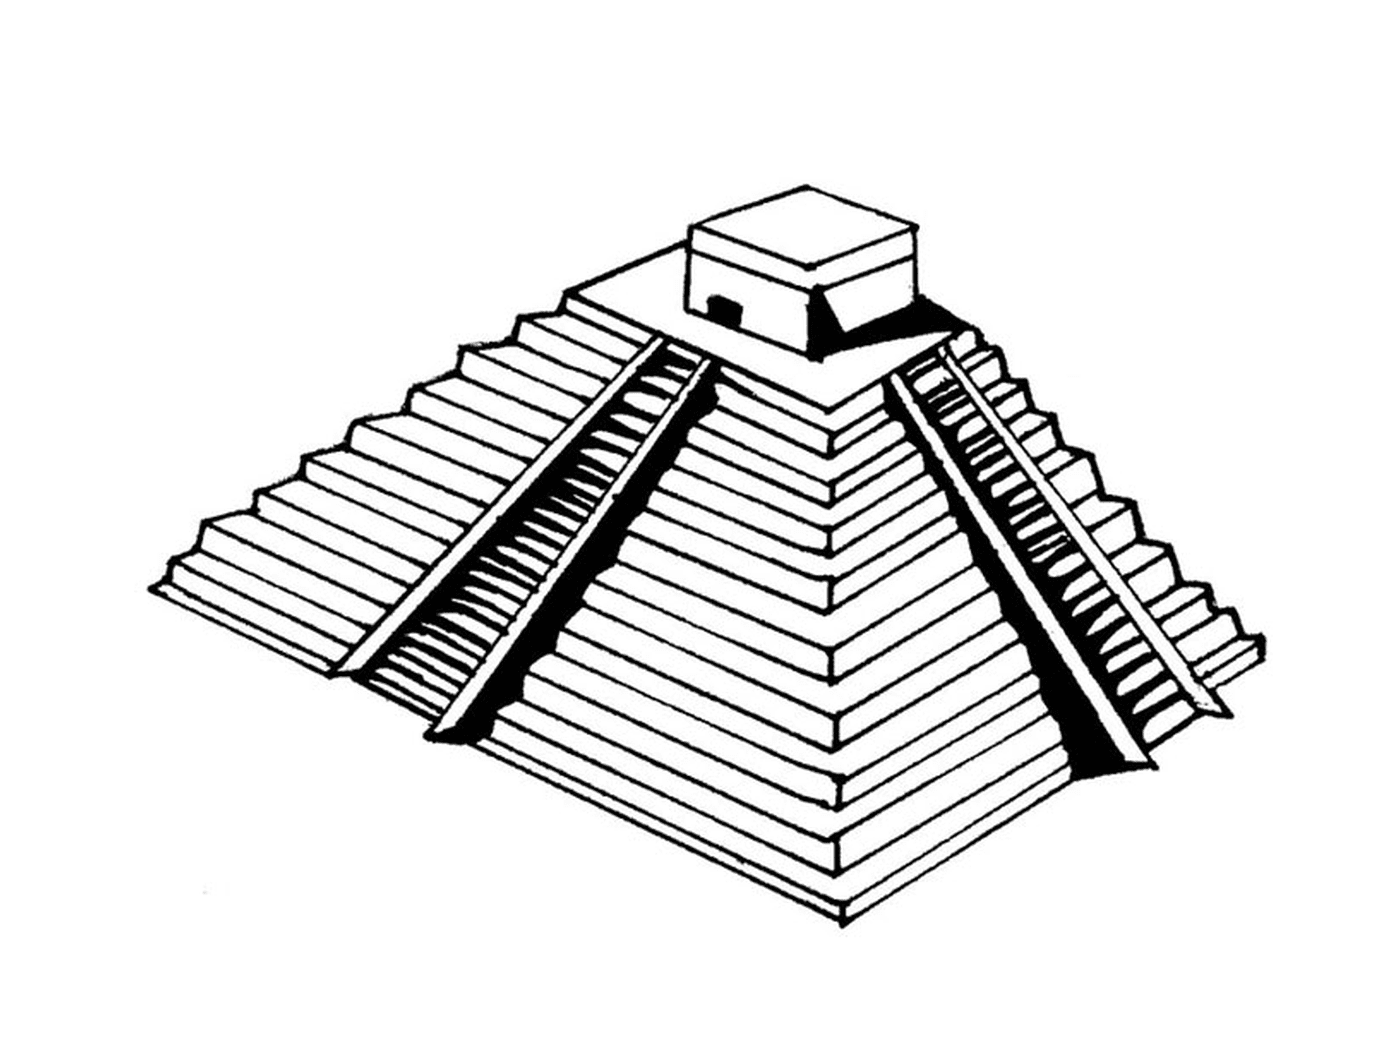   Pyramide avec une plateforme 